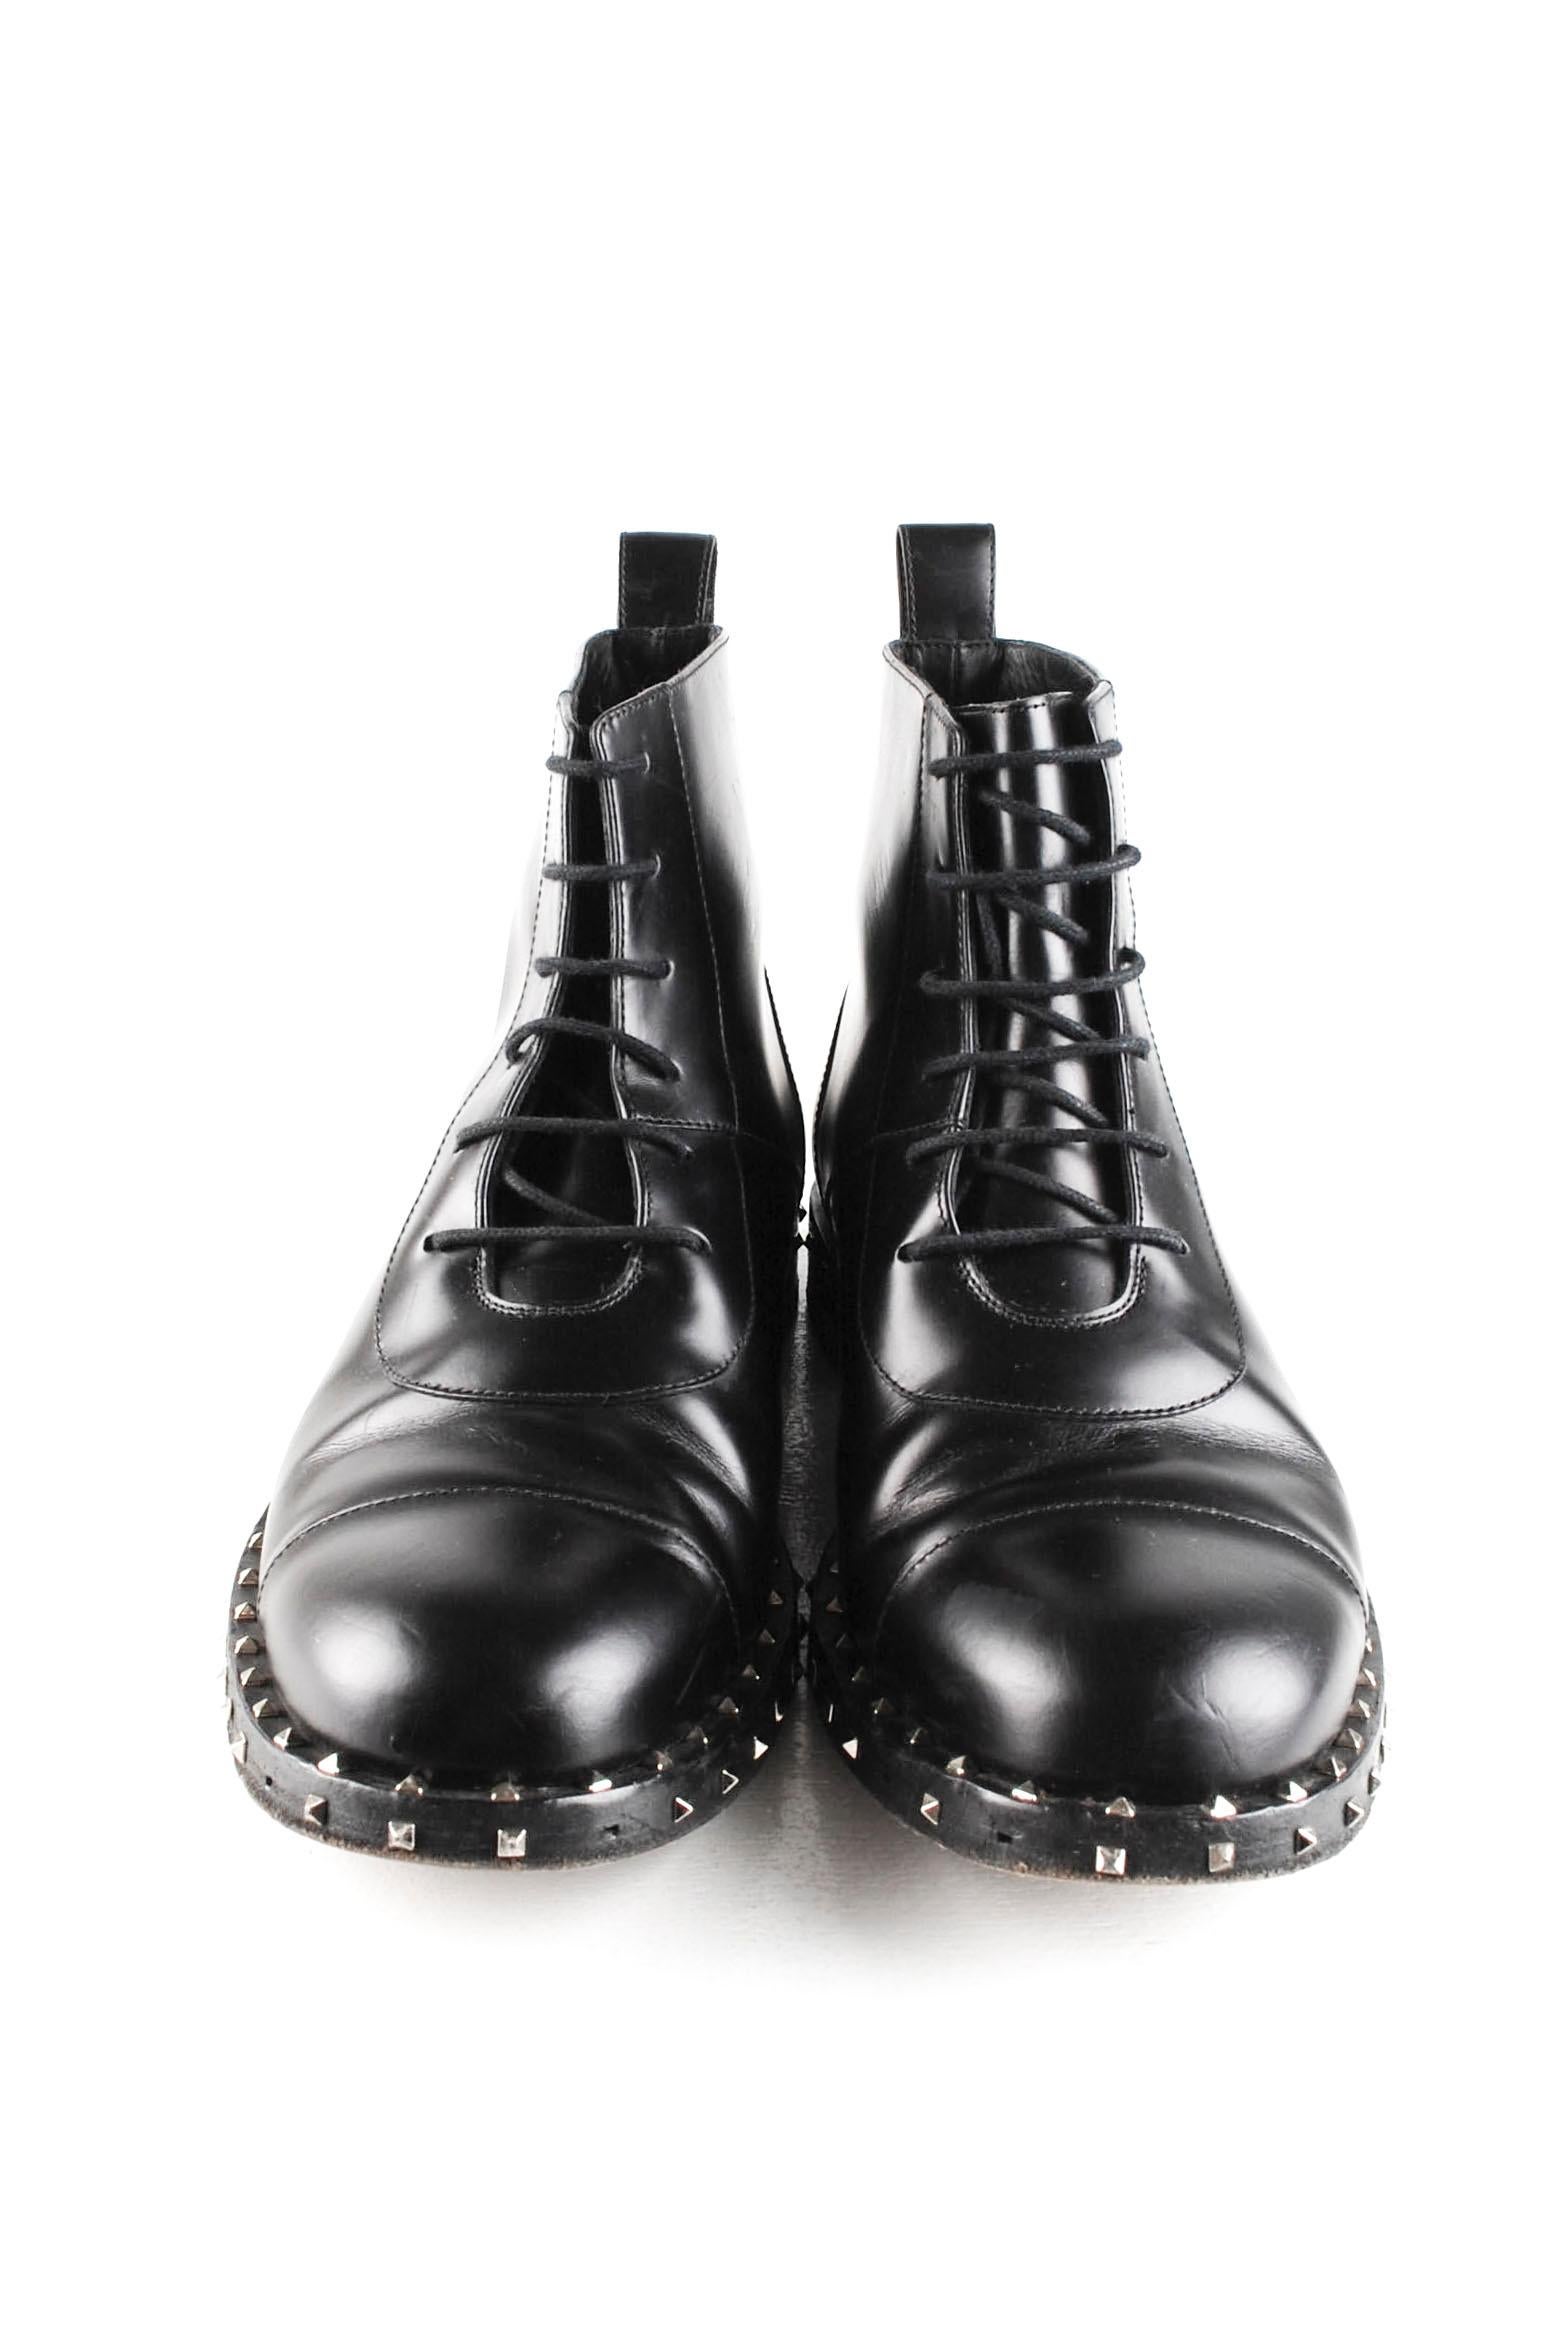 L'article mis en vente est 100% authentique Valentino Garavani Boots Men Shoes 
Couleur : Noir
(La couleur réelle peut varier légèrement en raison de l'interprétation individuelle de l'écran de l'ordinateur).
MATERIAL : Cuir
Taille de l'étiquette :